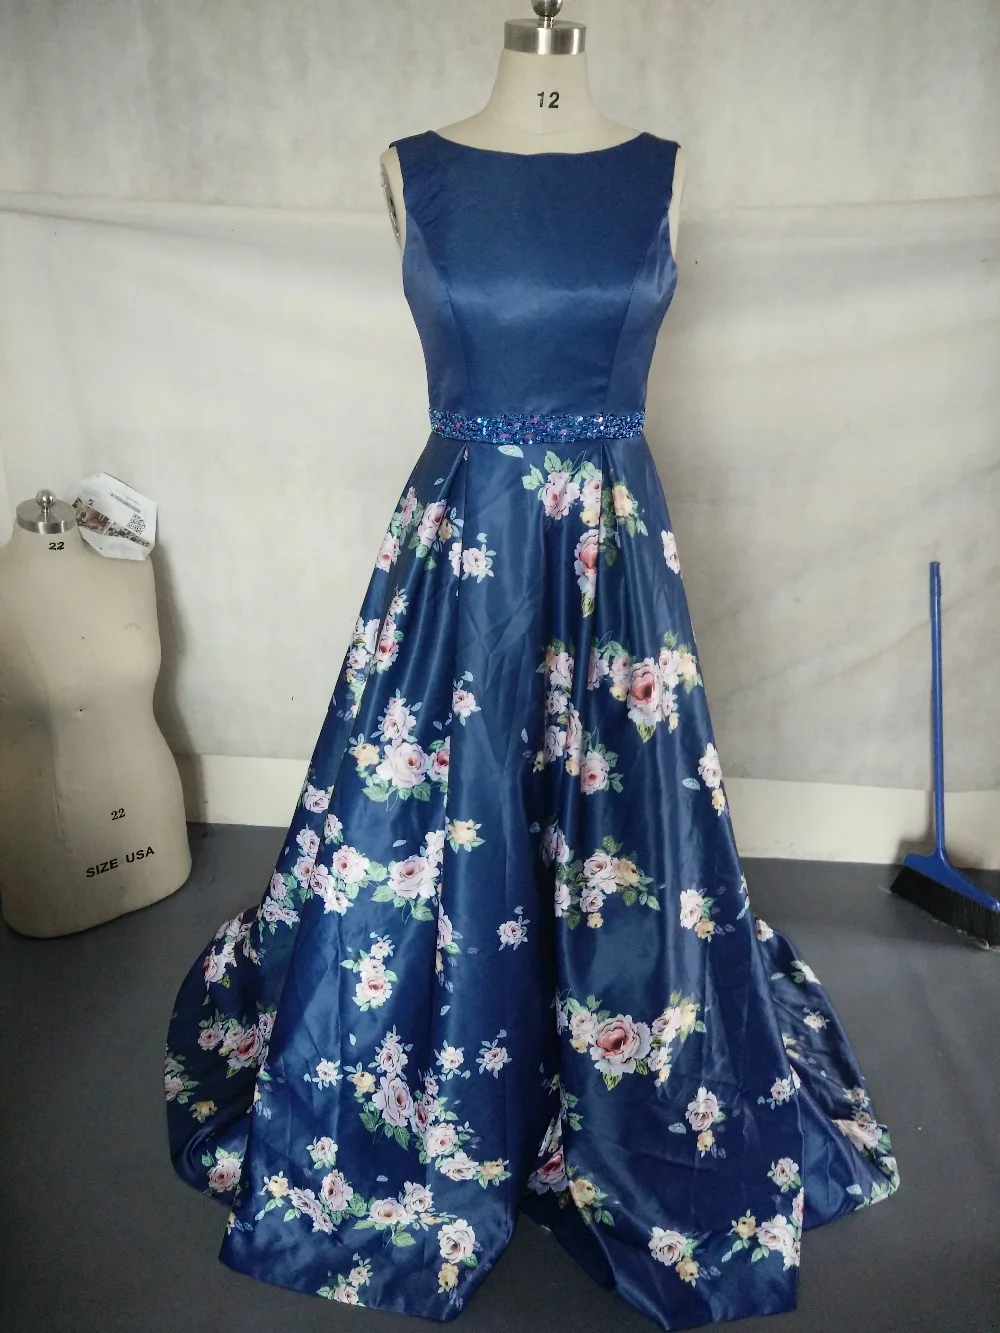 JaneVini элегантные Цветочный принт платье с открытой спиной для выпускного детское нарядное платье, украшенное бусинами и цветами, темно-синий Атлас Длинные свадебные платья Женская одежда для вечеринки